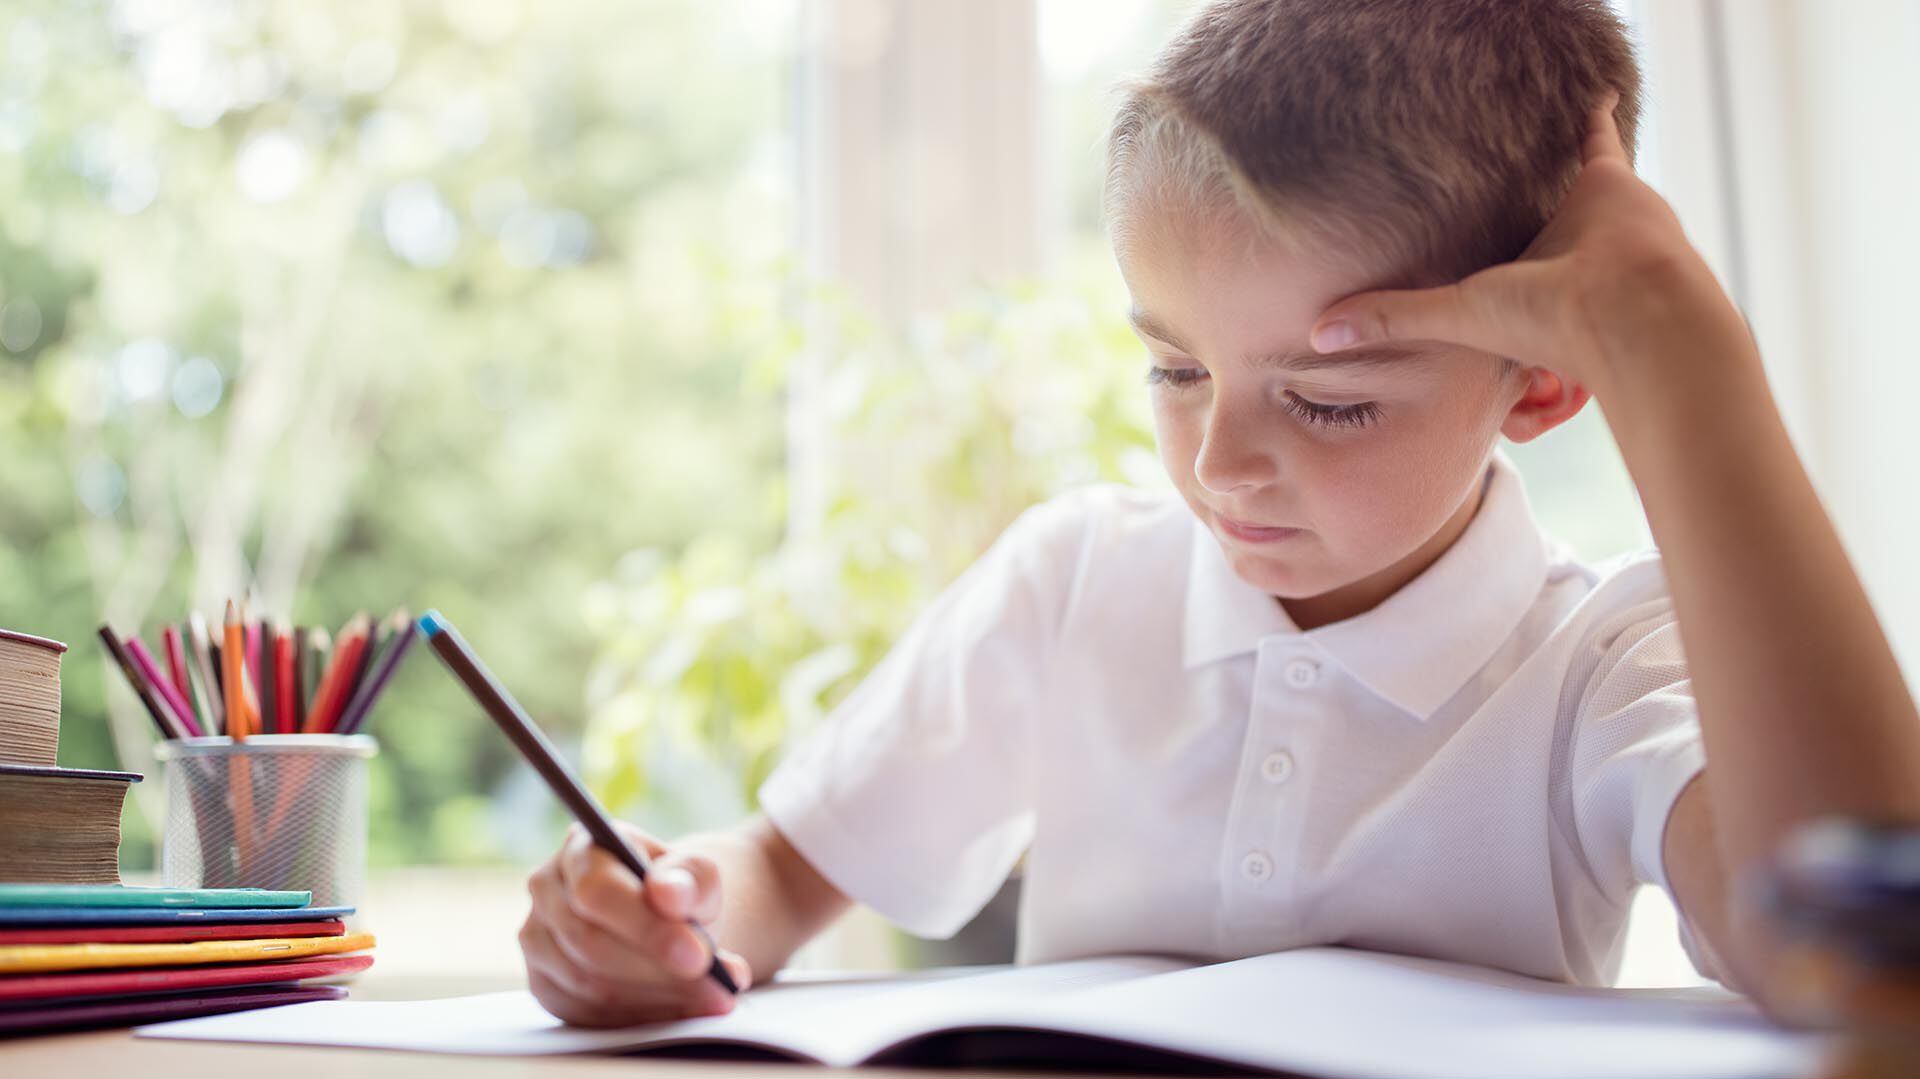 “La dislexia es un trastorno o dificultad específica del aprendizaje de la lectura (y de la escritura) de base neurobiológica, con un componente genético importante", dice uno de los expertos
(Getty Images)